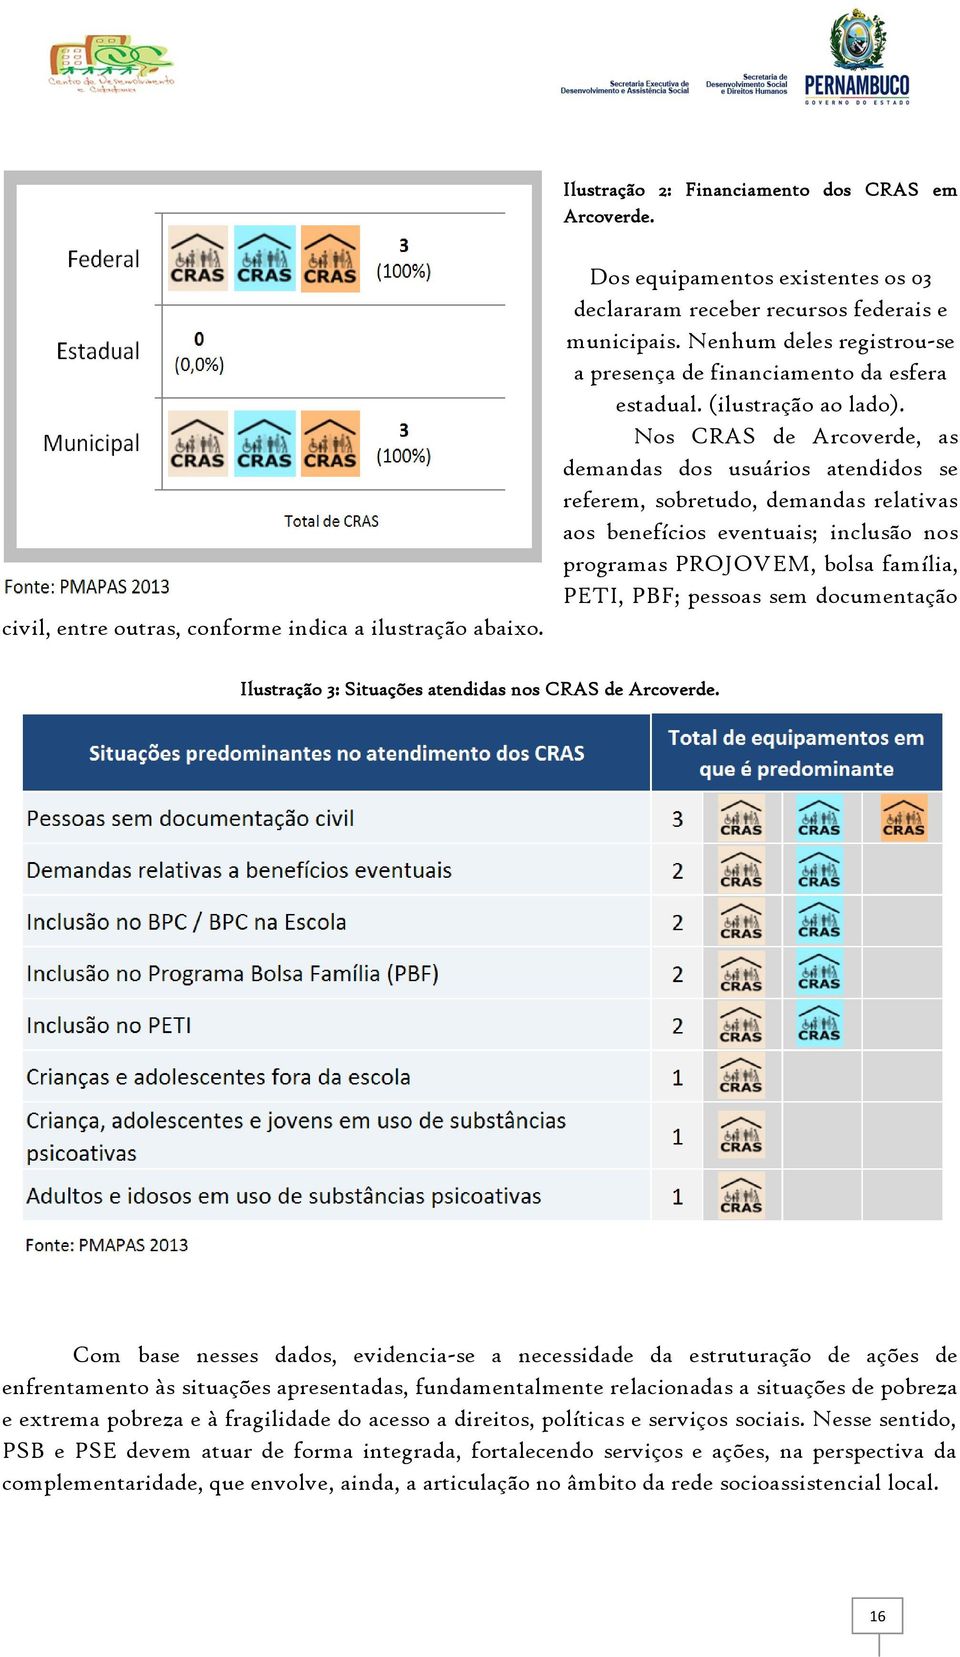 Nos CRAS de Arcoverde, as demandas dos usuários atendidos se referem, sobretudo, demandas relativas aos benefícios eventuais; inclusão nos programas PROJOVEM, bolsa família, PETI, PBF; pessoas sem